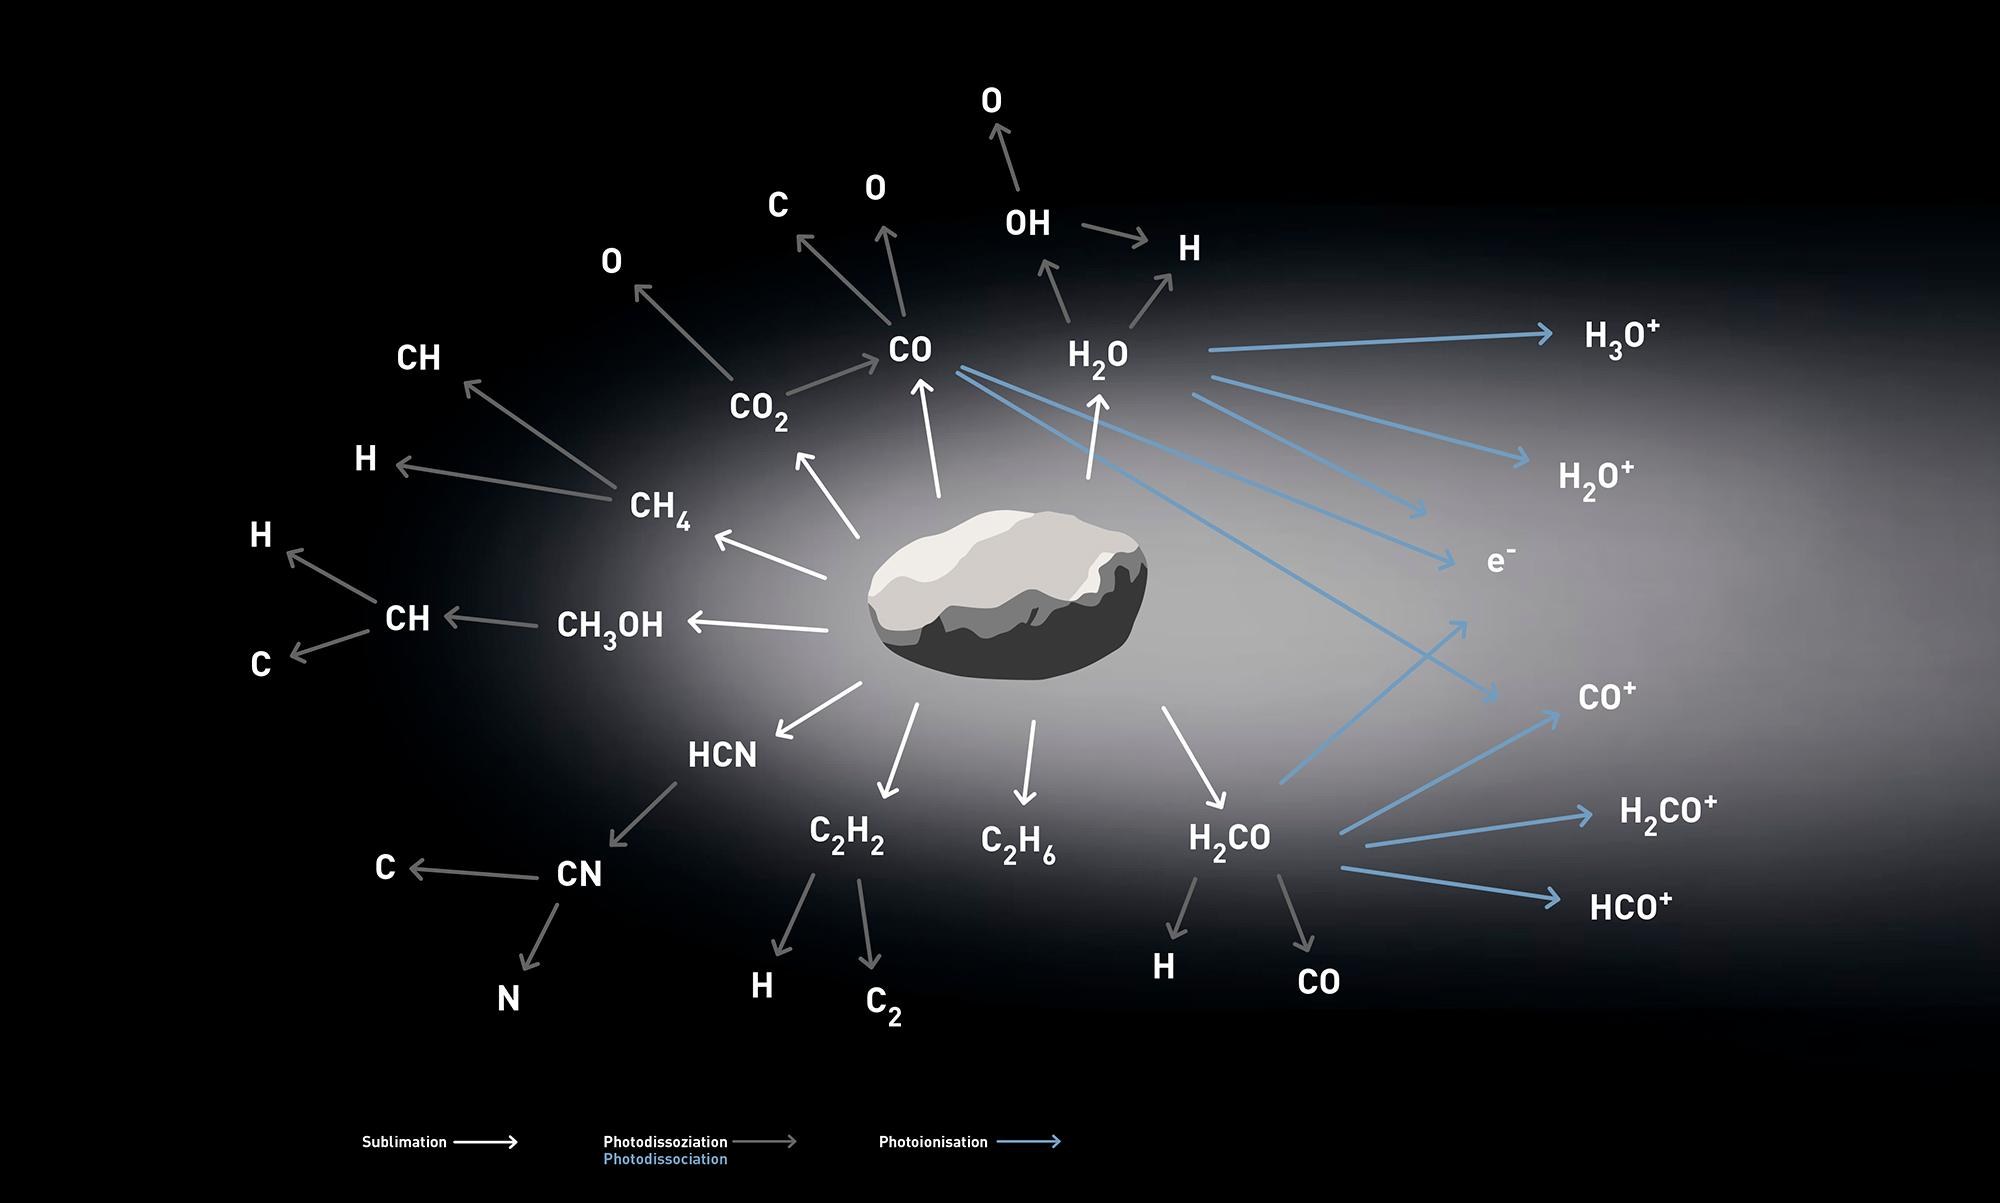 Sublimation, ein wesentliches Merkmal von Kometen